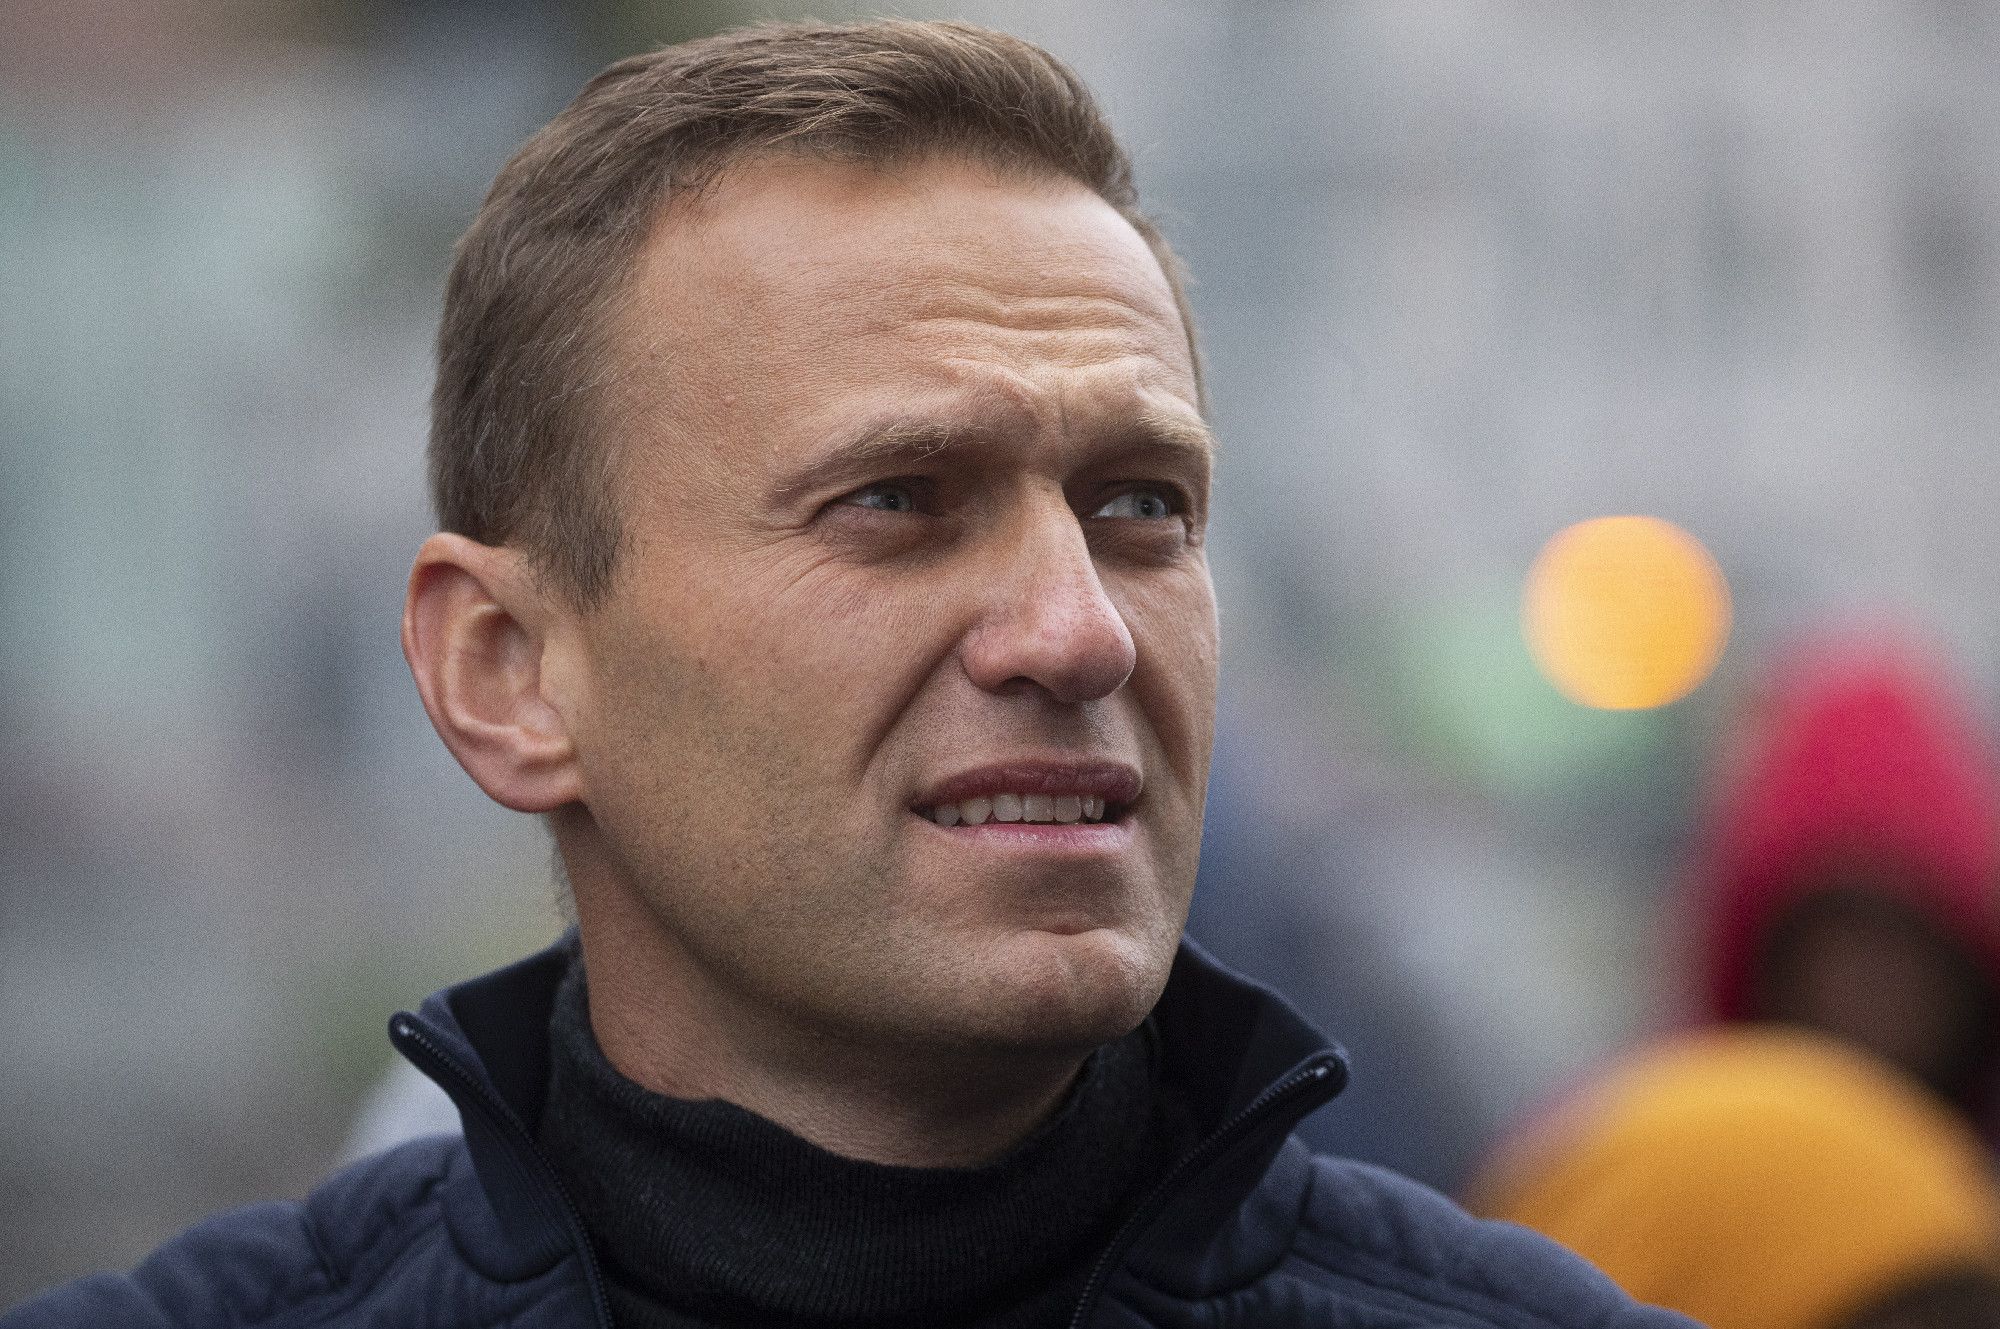 A magyar kormány is Navalnij halálának kivizsgálását követeli, a többi EU-s állammal együtt